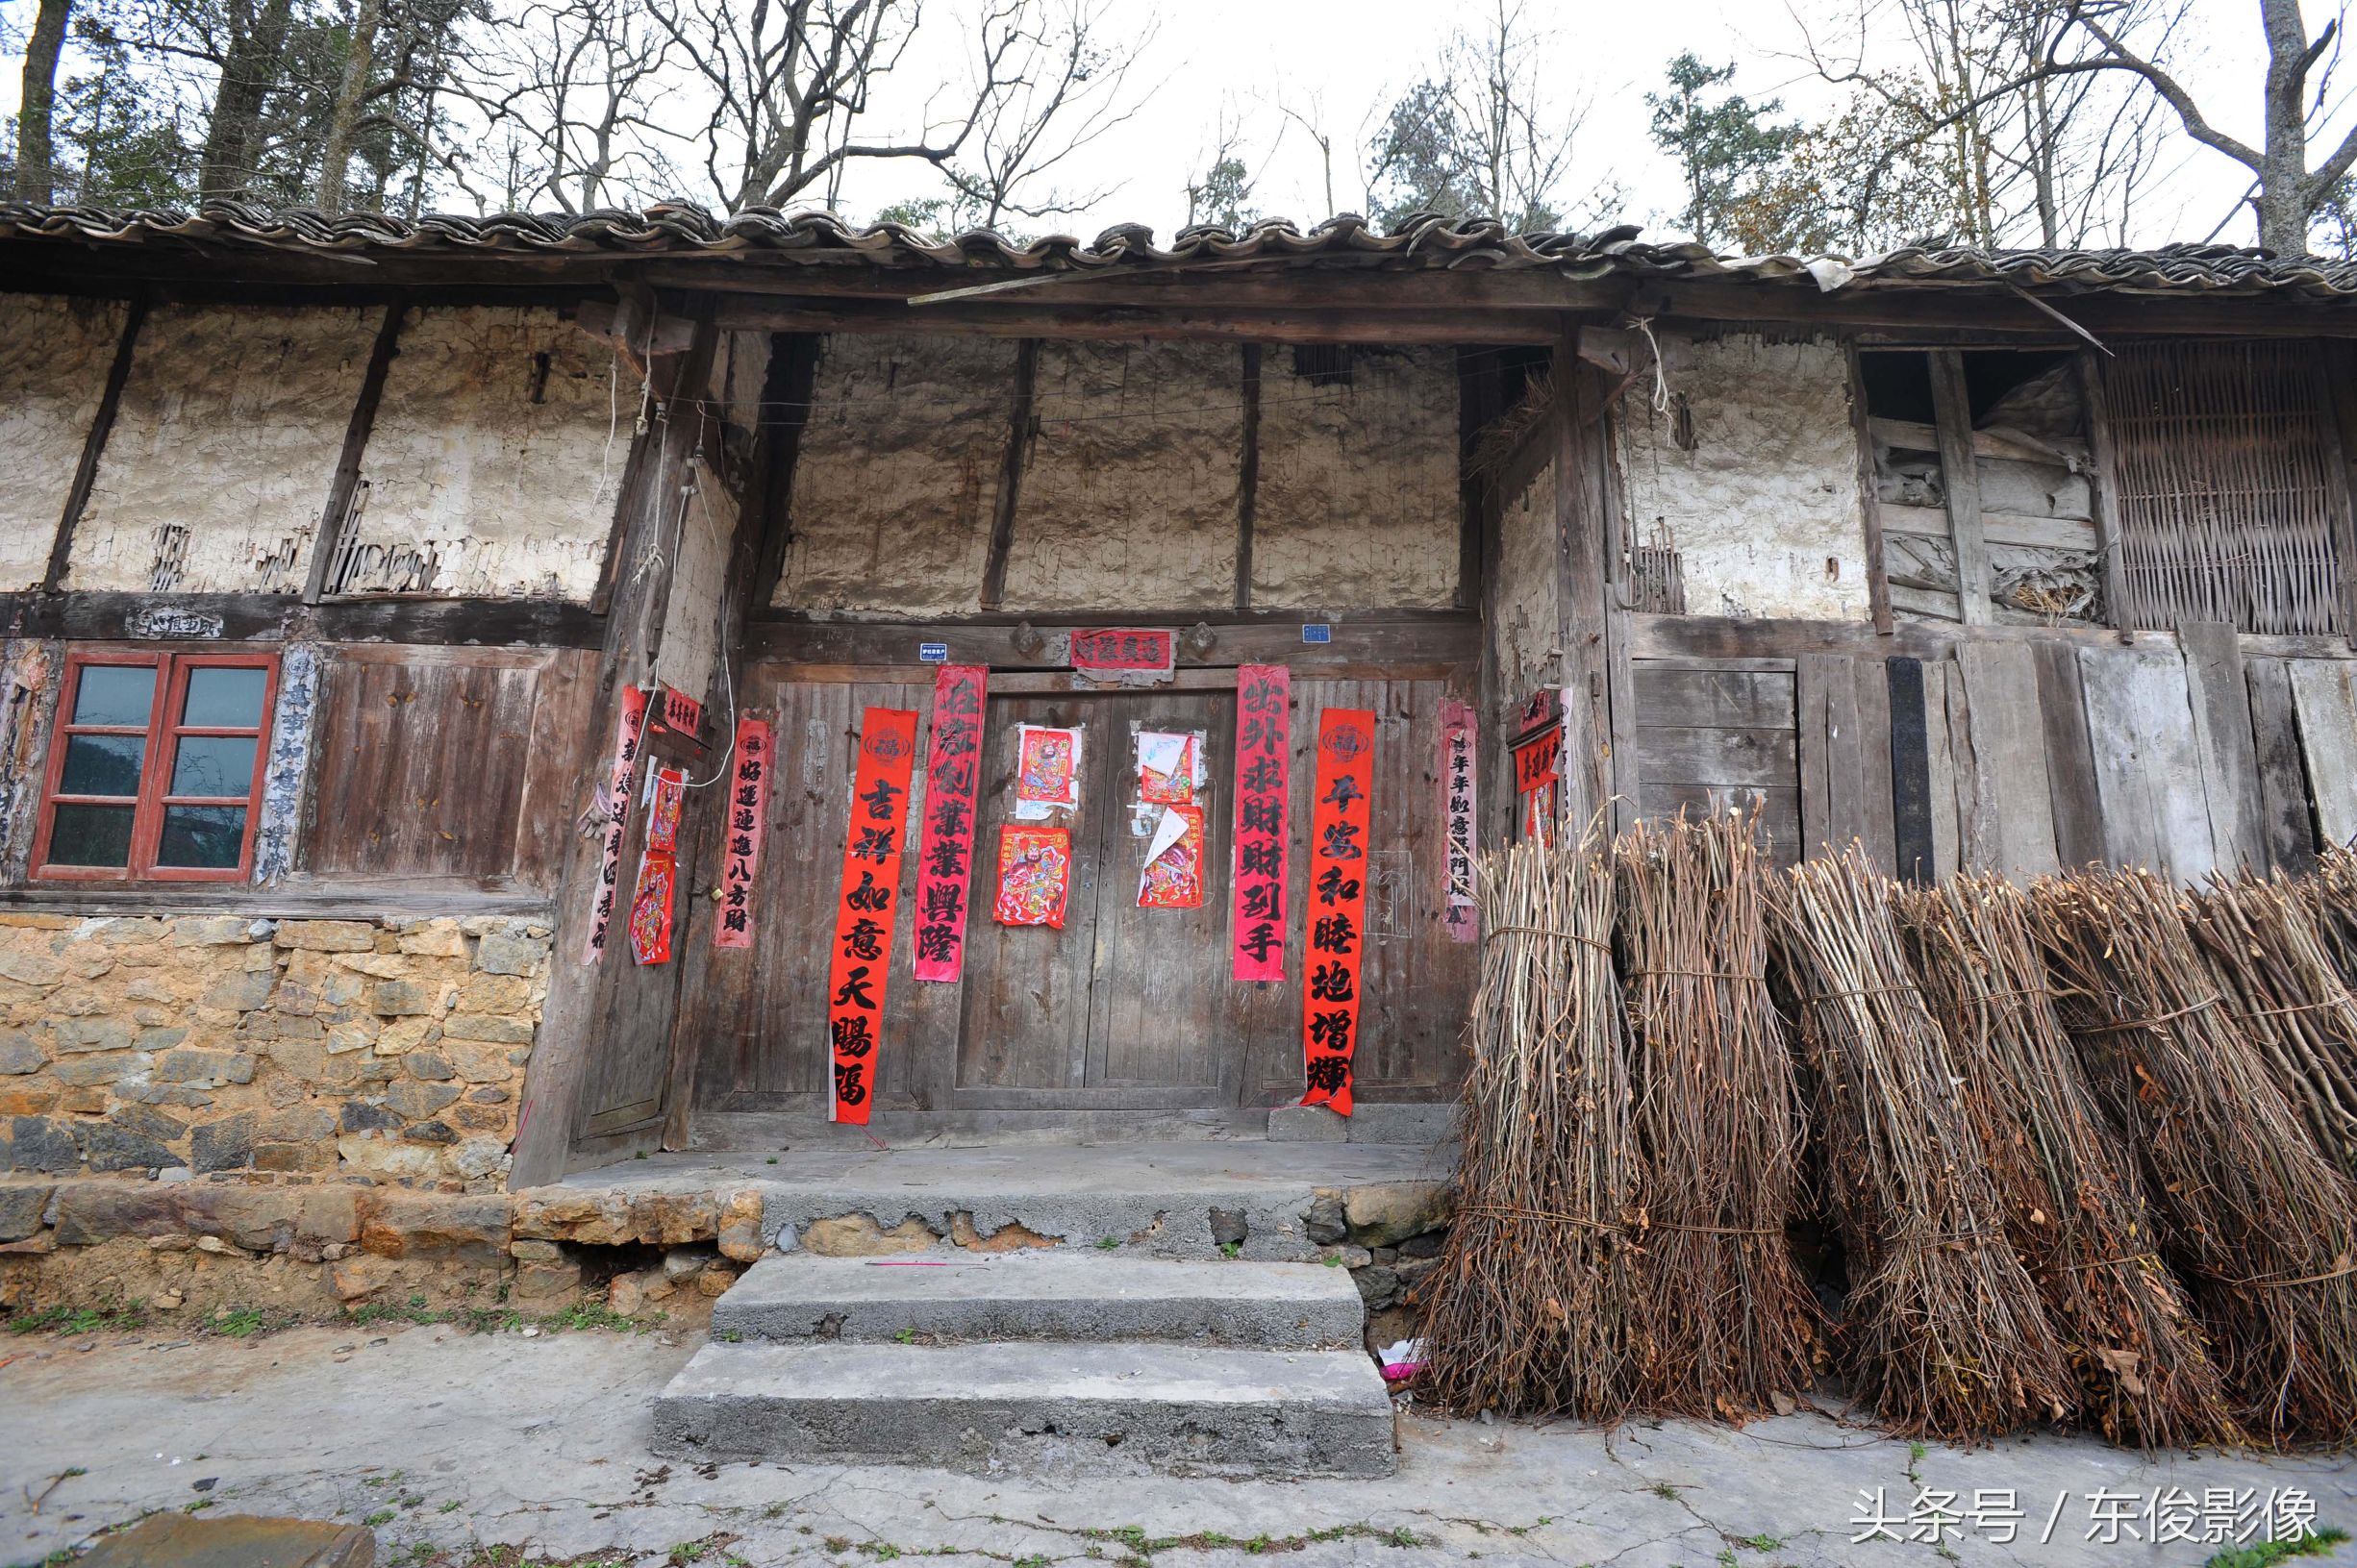 贵州:农村这种房子没有人再修了,它是一个时代的建筑风格,曾经留住